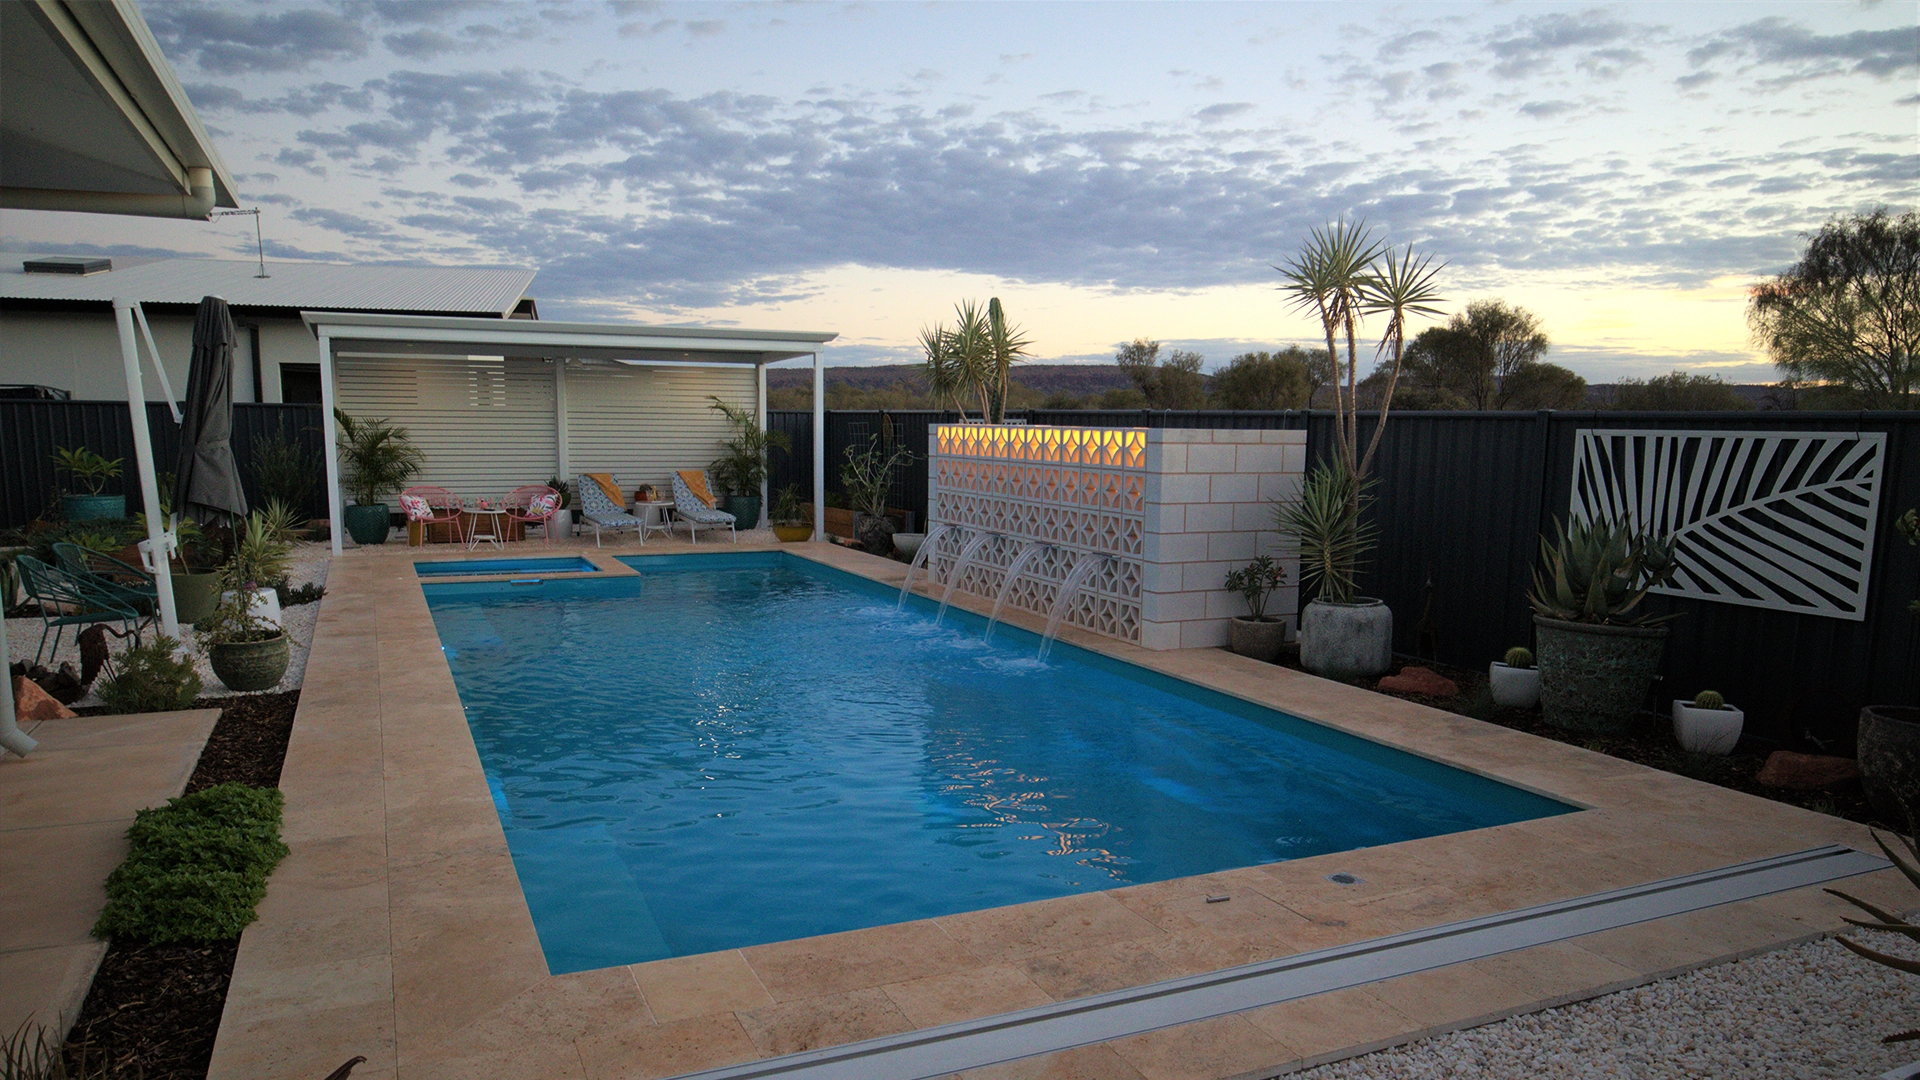 Pool builders in Alice Springs, NT